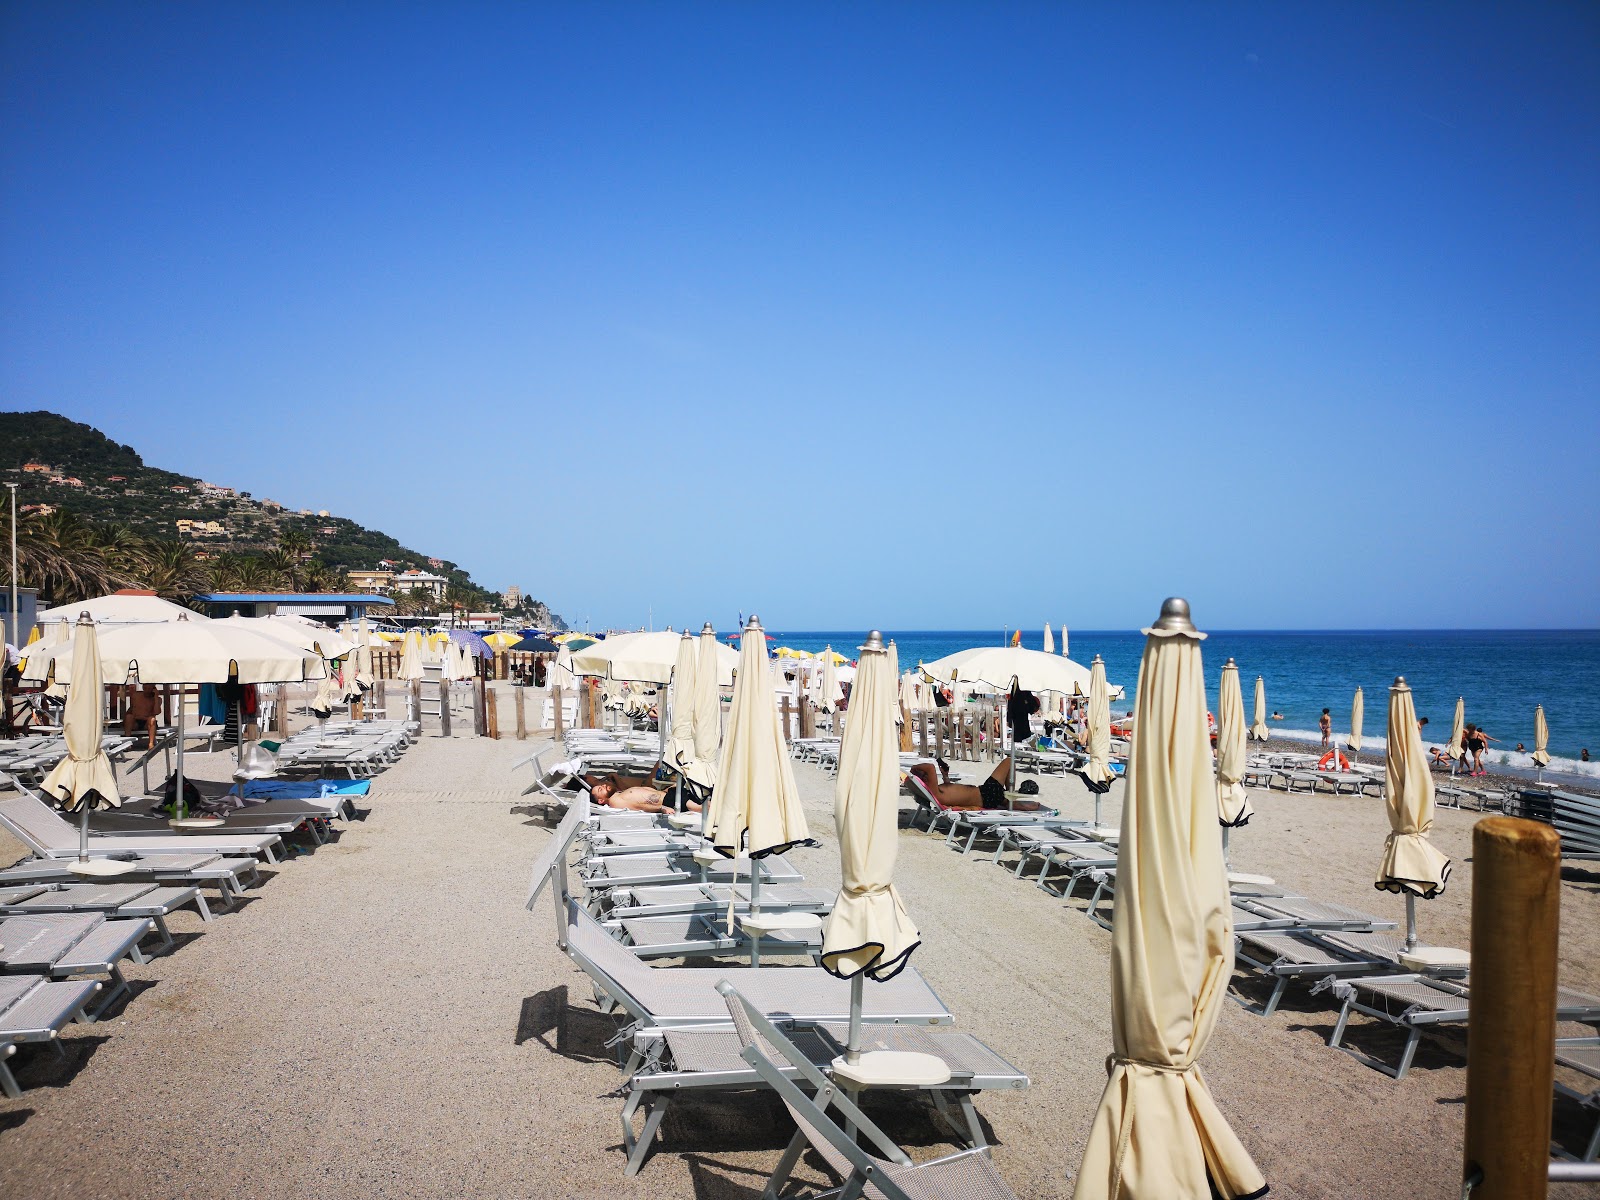 Foto von Spiaggia libera Attrezzata - beliebter Ort unter Entspannungskennern